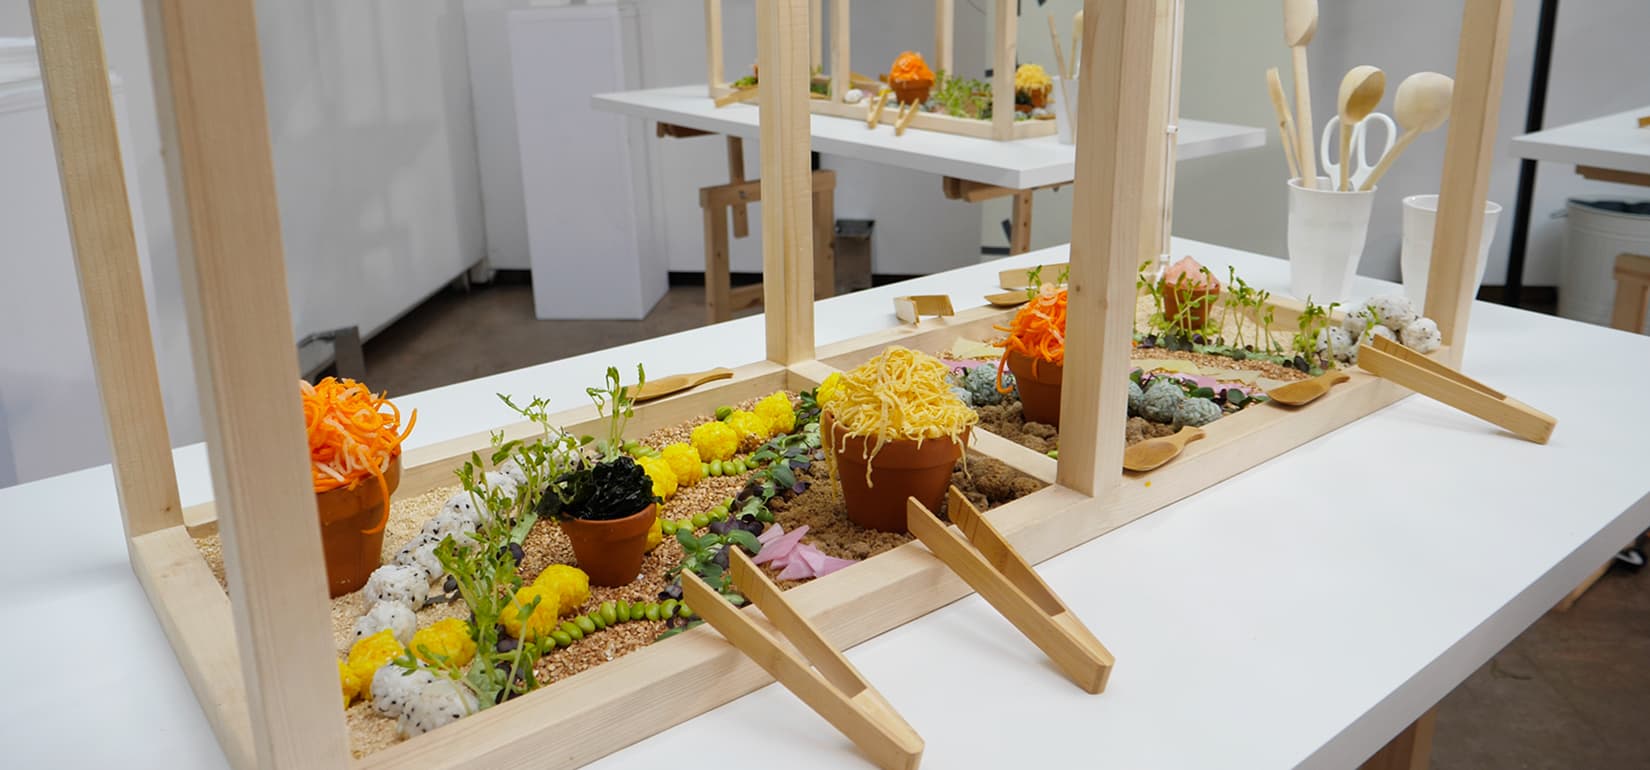 Le jardin comestible permet de récolter et de manger les éléments qui le composent. C'est une installation culinaire créée dans une serre en bois. Il s'agit d'une invitation à la découverte du design culinaire et des goûts japonais pour la marque de comestique Shiseido.